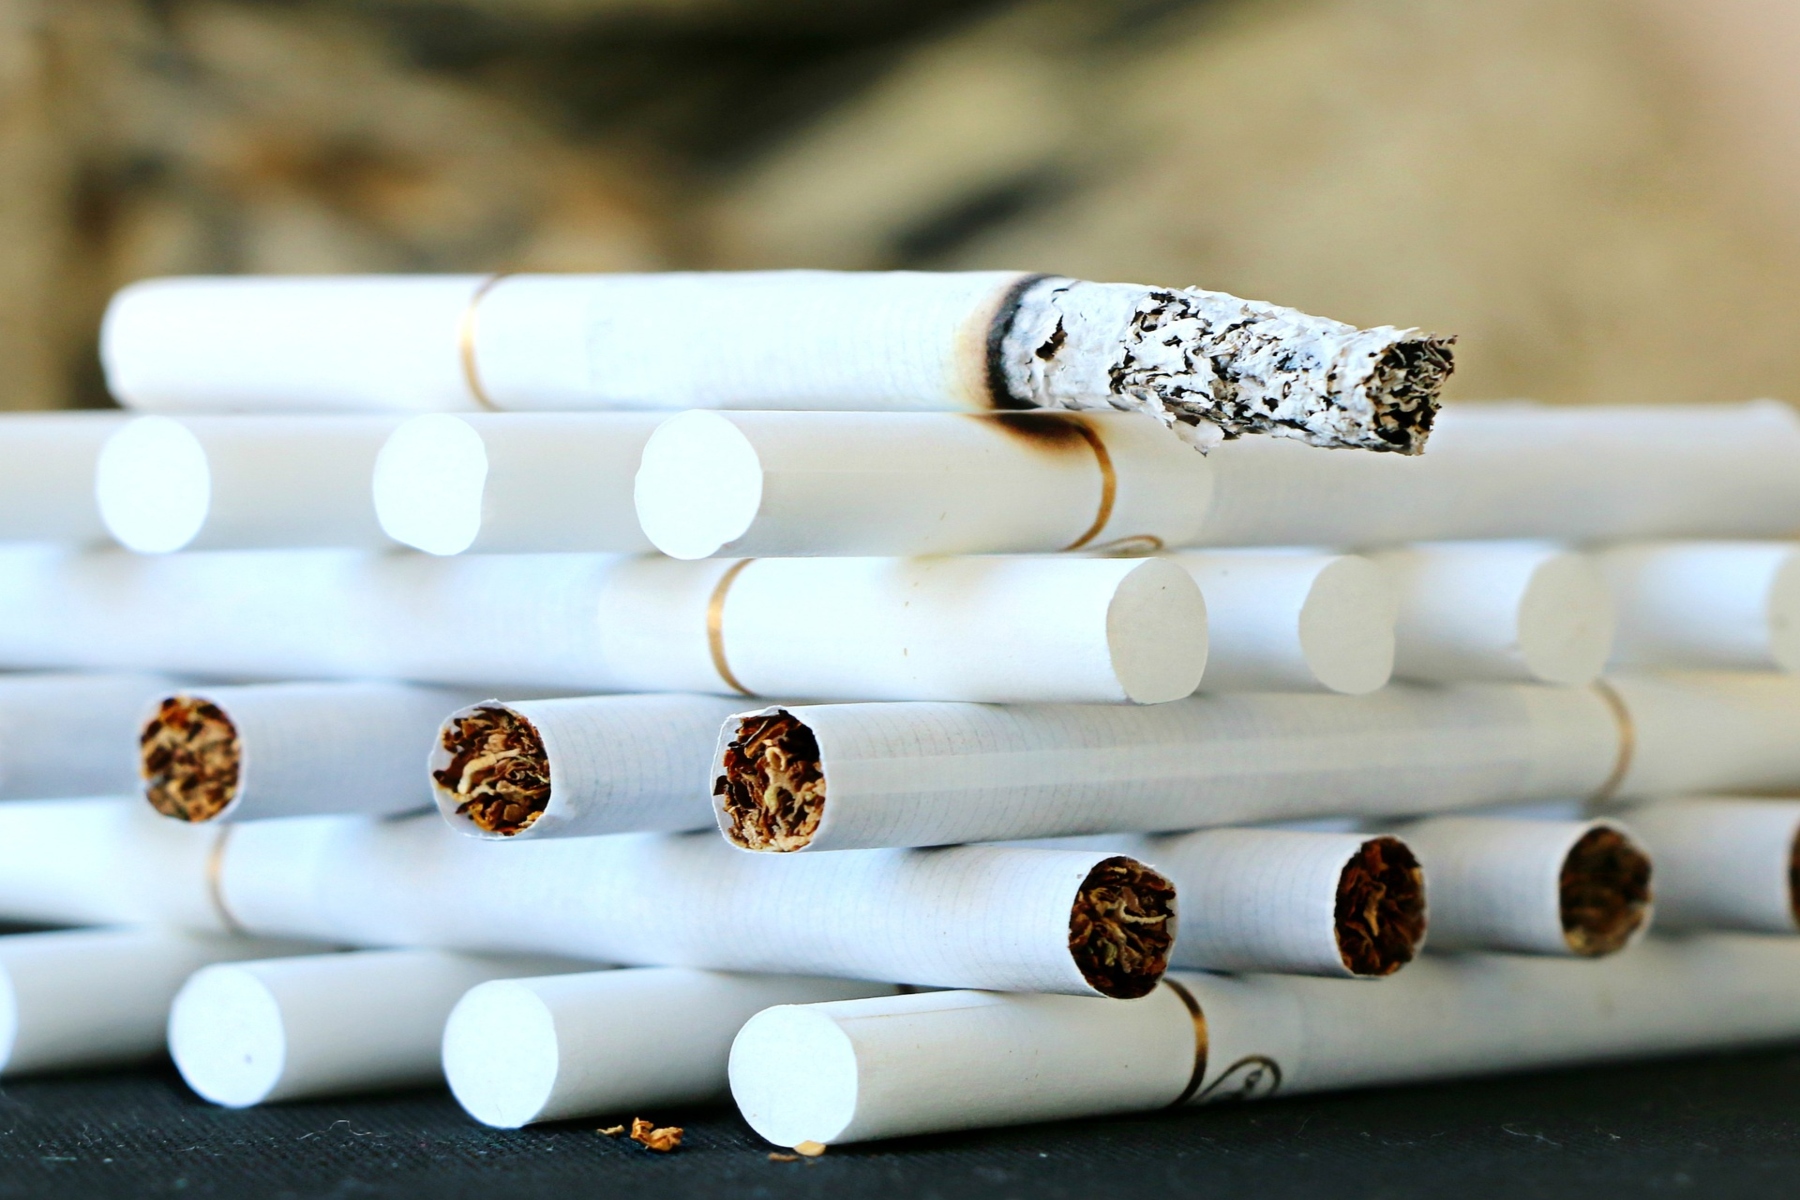 Καναδάς τσιγάρο: Προειδοποιήσεις για το πόσο βλάπτει το κάπνισμα θα αρχίσει να βάζει ο Καναδάς σε μεμονωμένα τσιγάρα